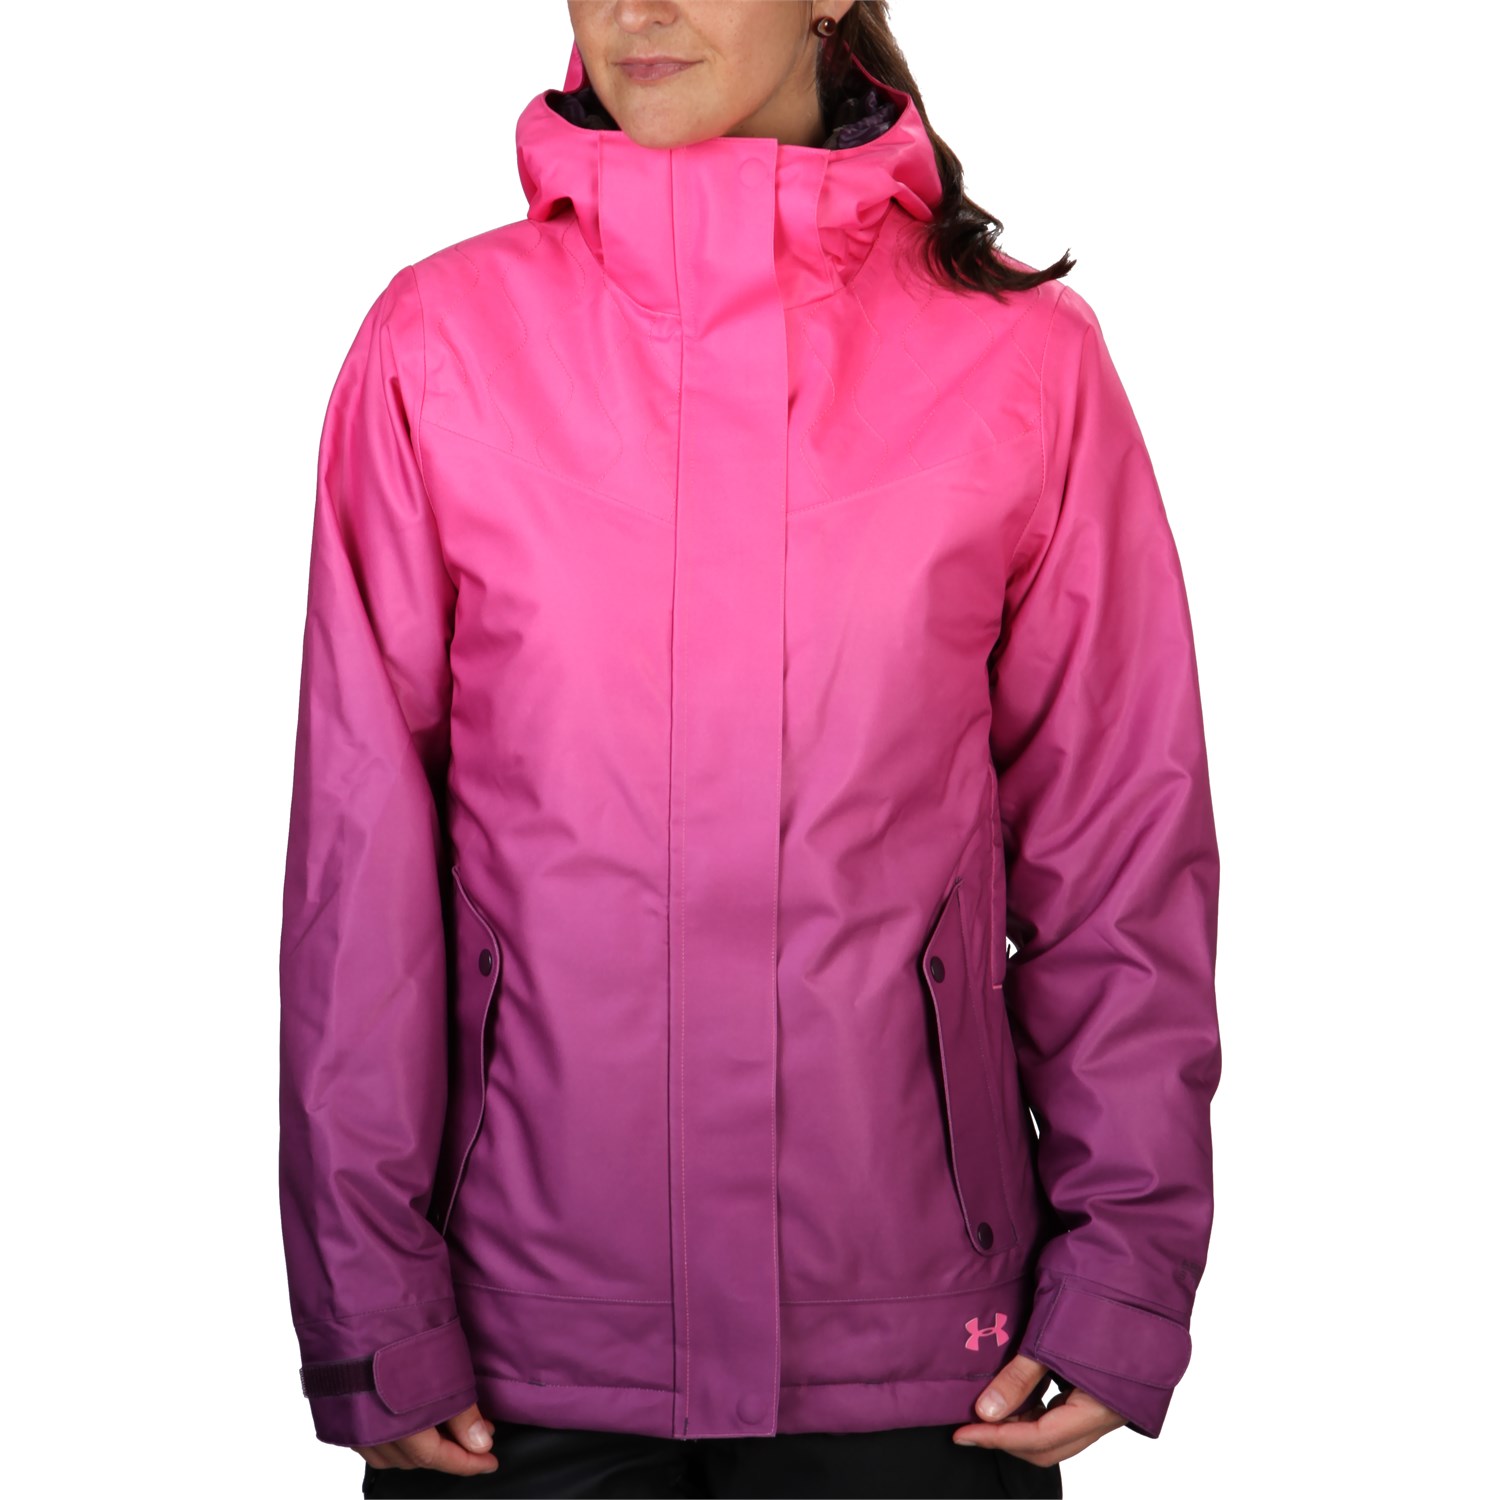 ua coldgear infrared jacket